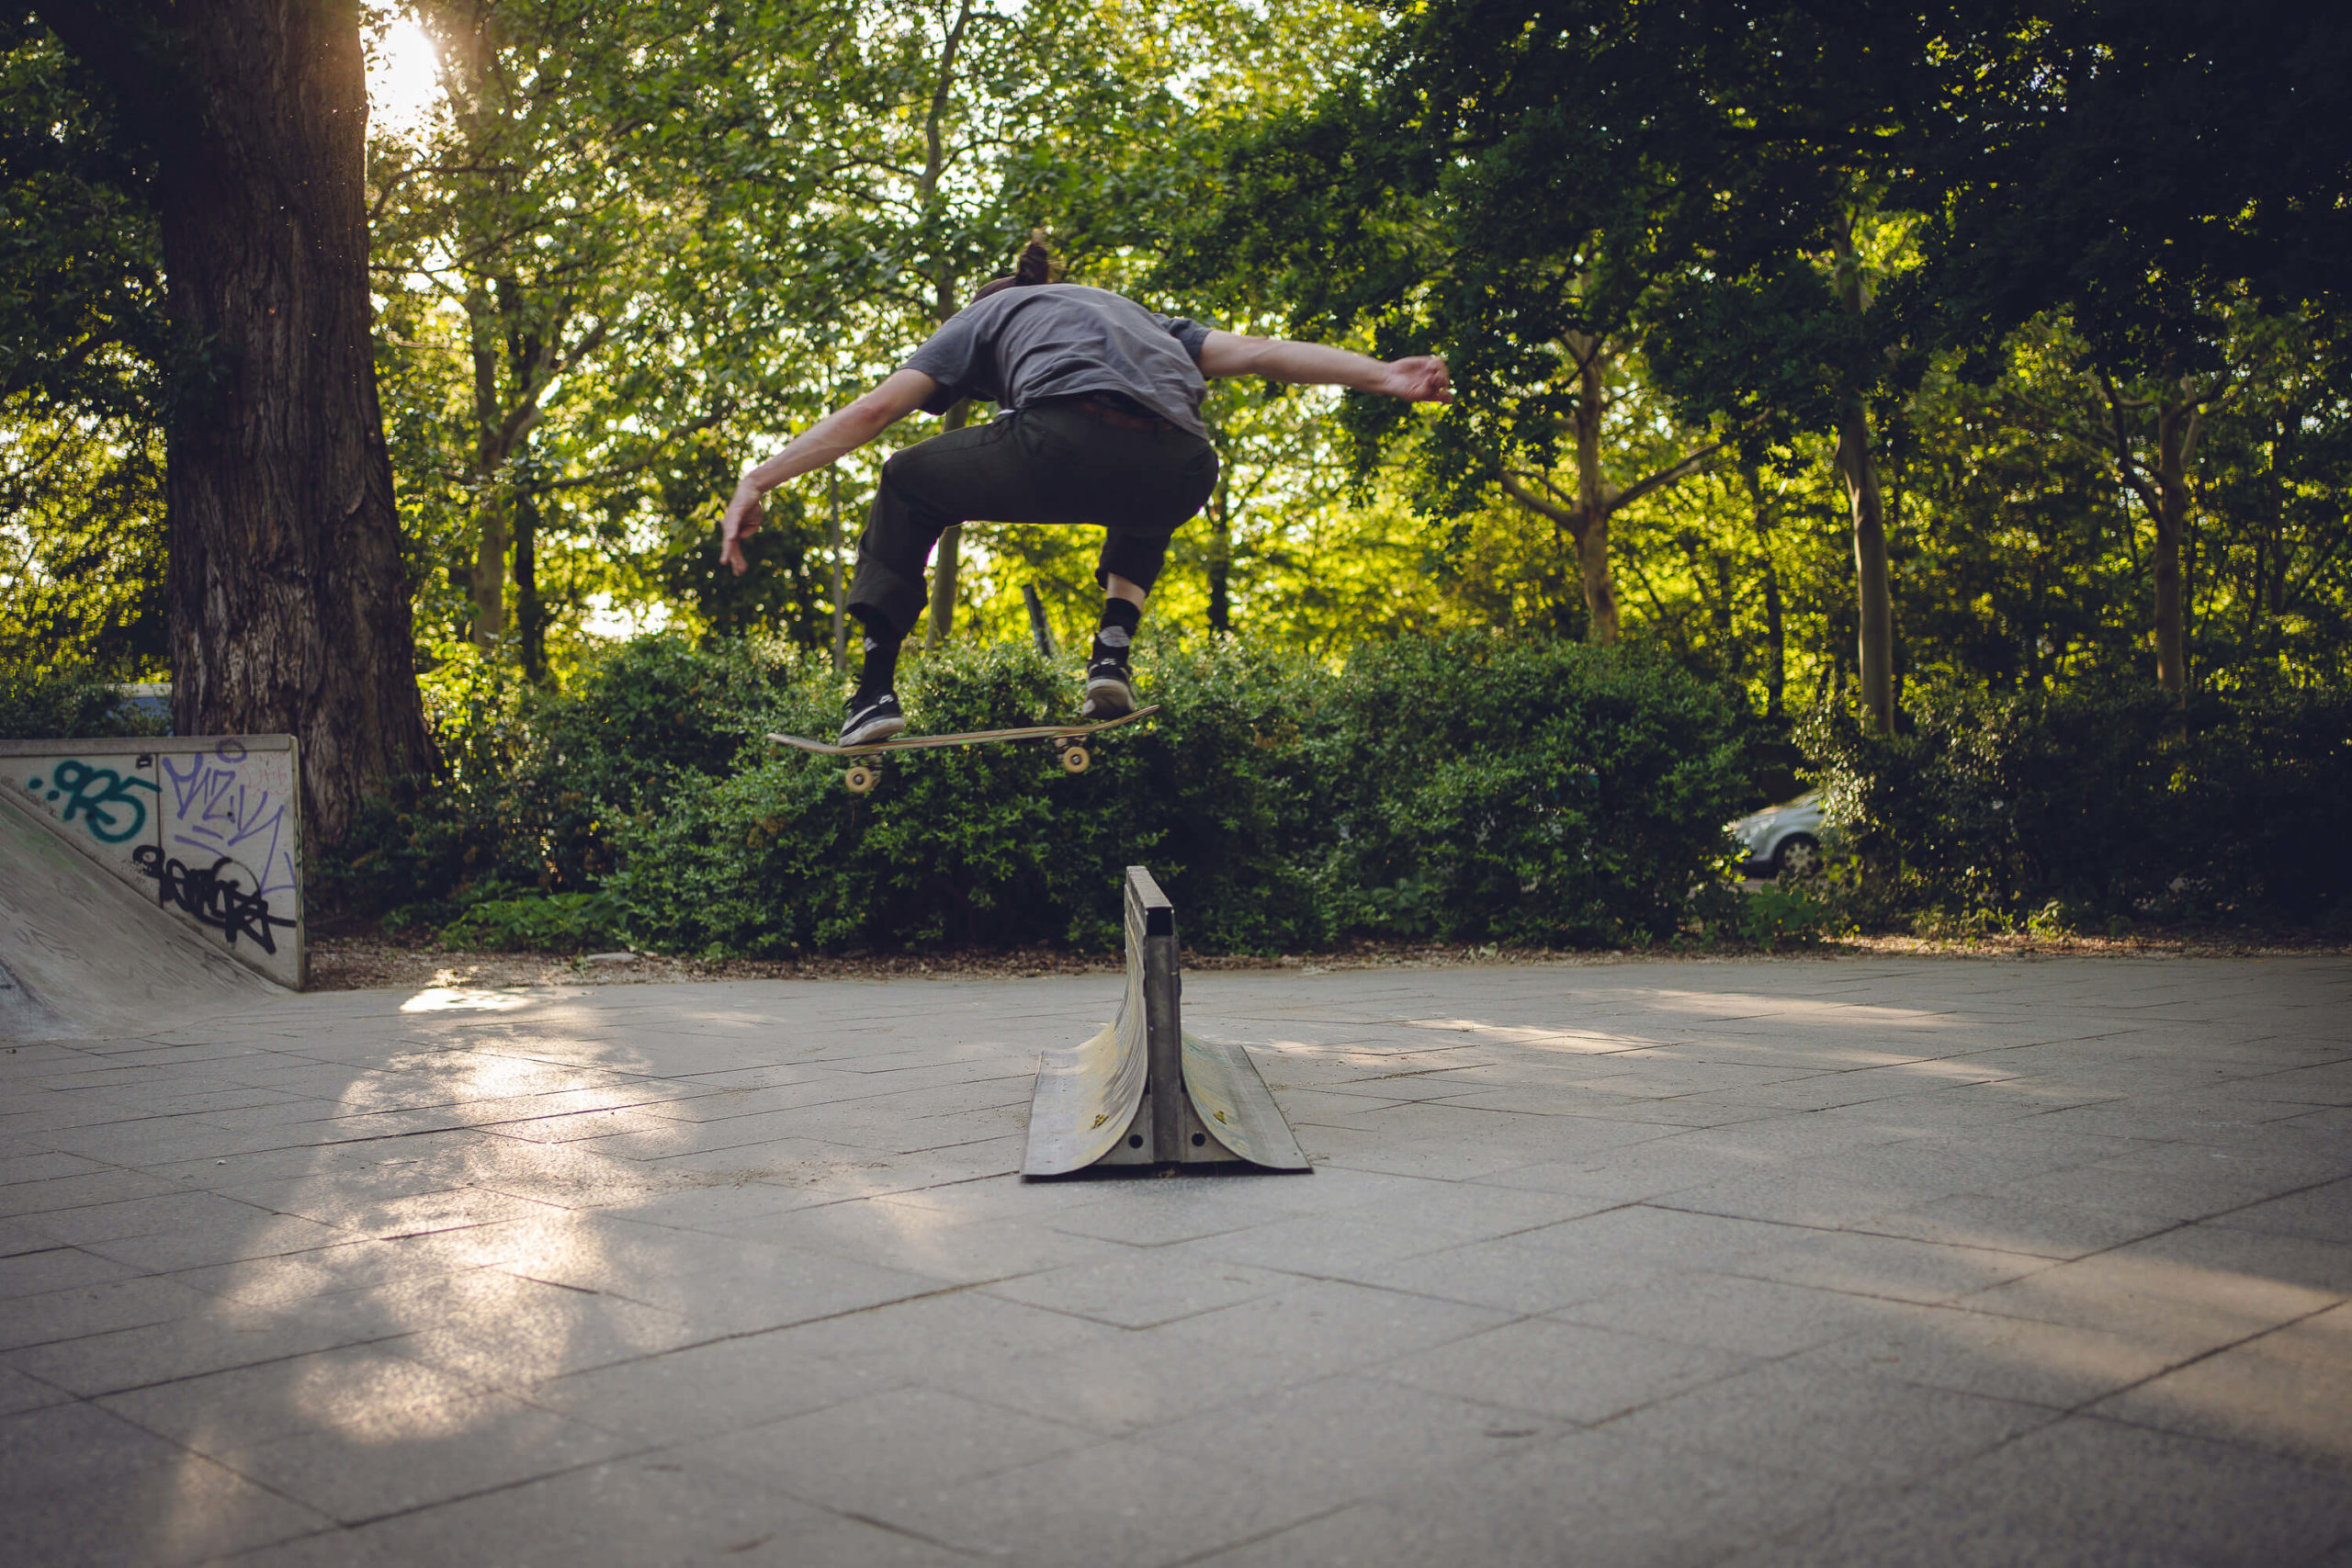 musician Finn of band Auburn light jumps with skate board in skate park Berlin